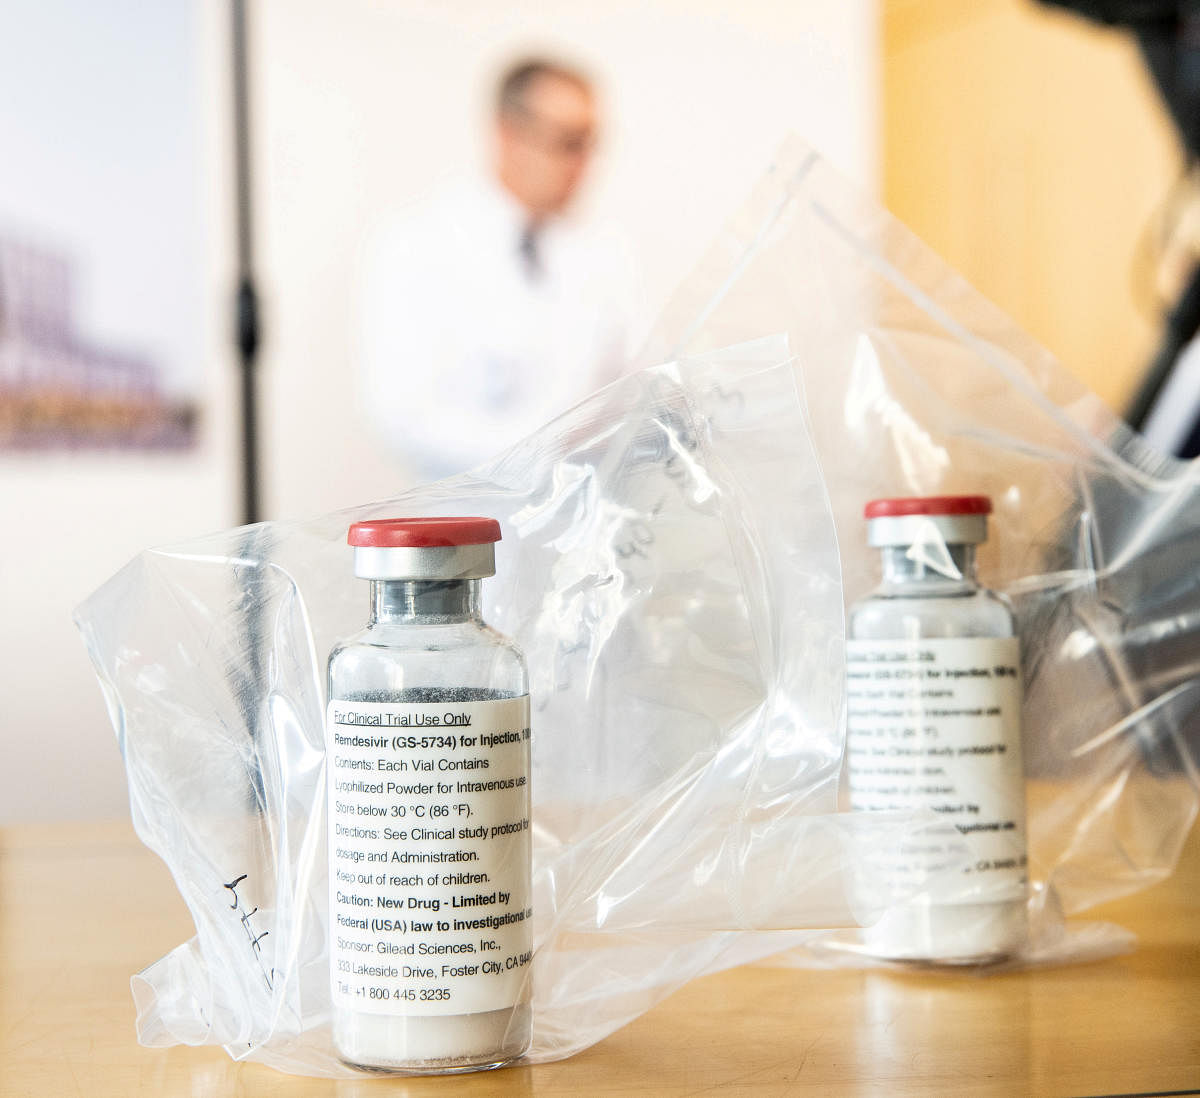 Hetero set to deliver 20,000 vials of generic Remdesivir